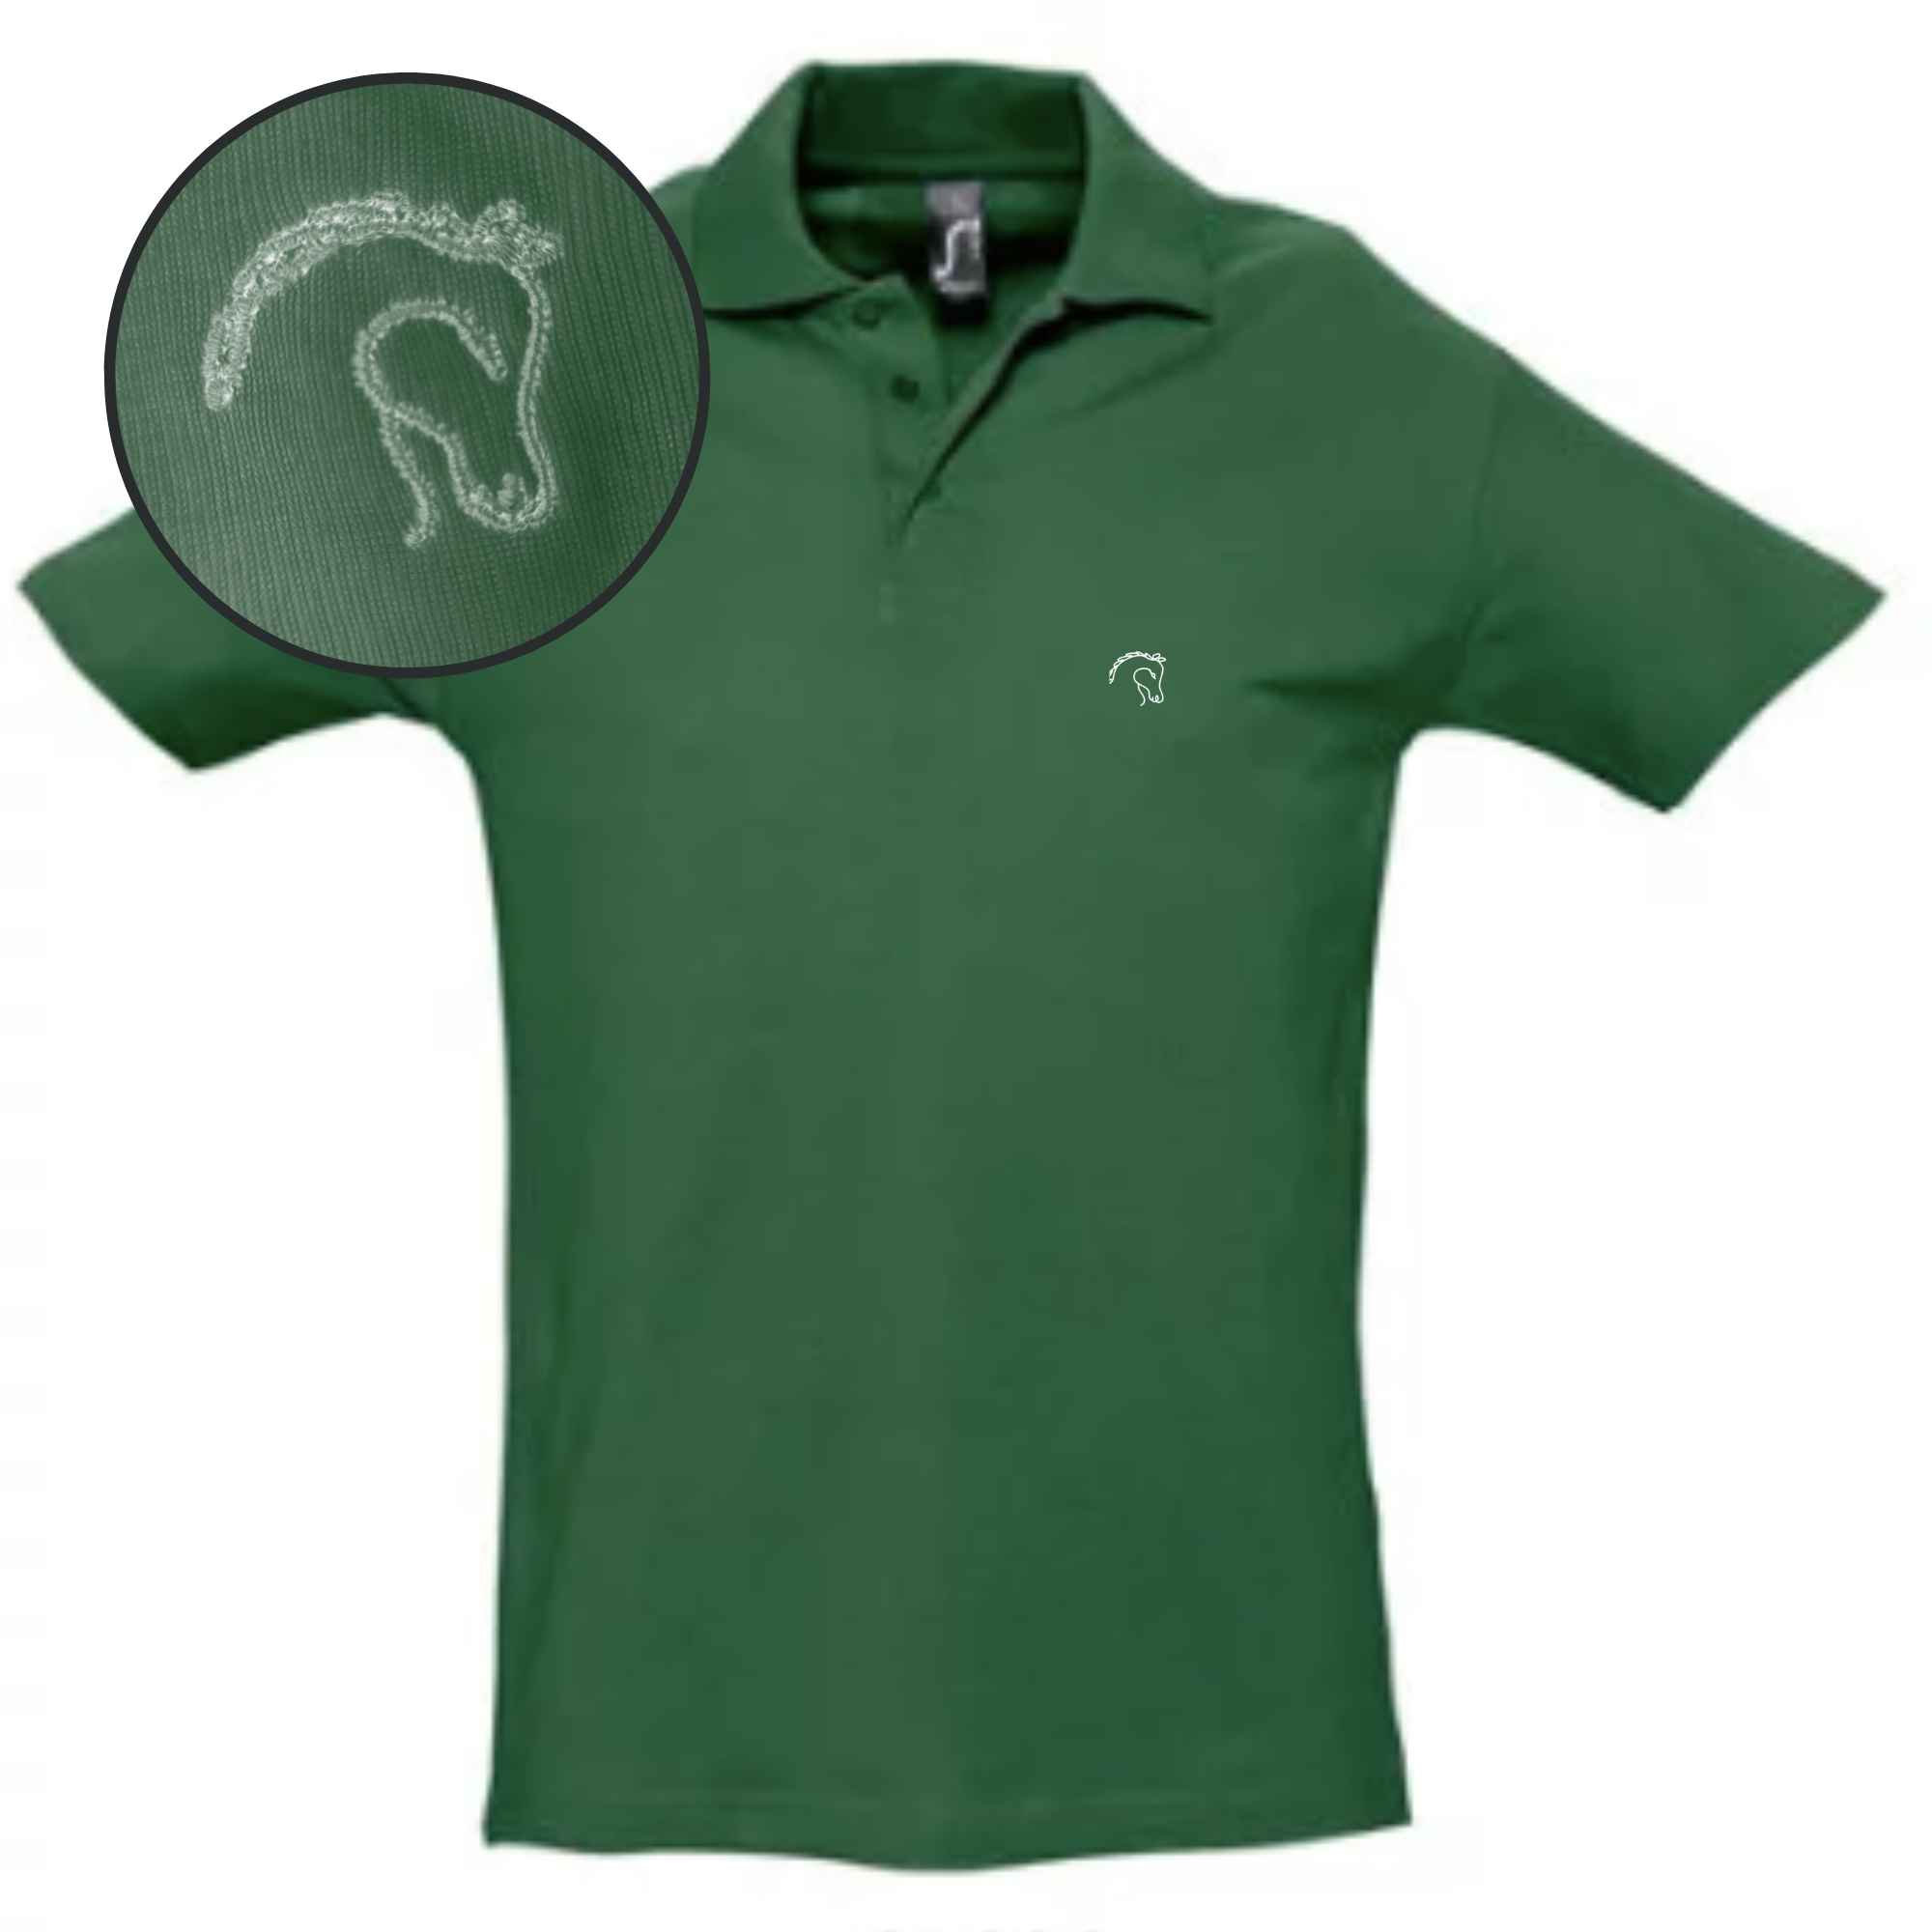 Grünes Poloshirt mit Pferdekopf-Stick auf die Brust gestickt